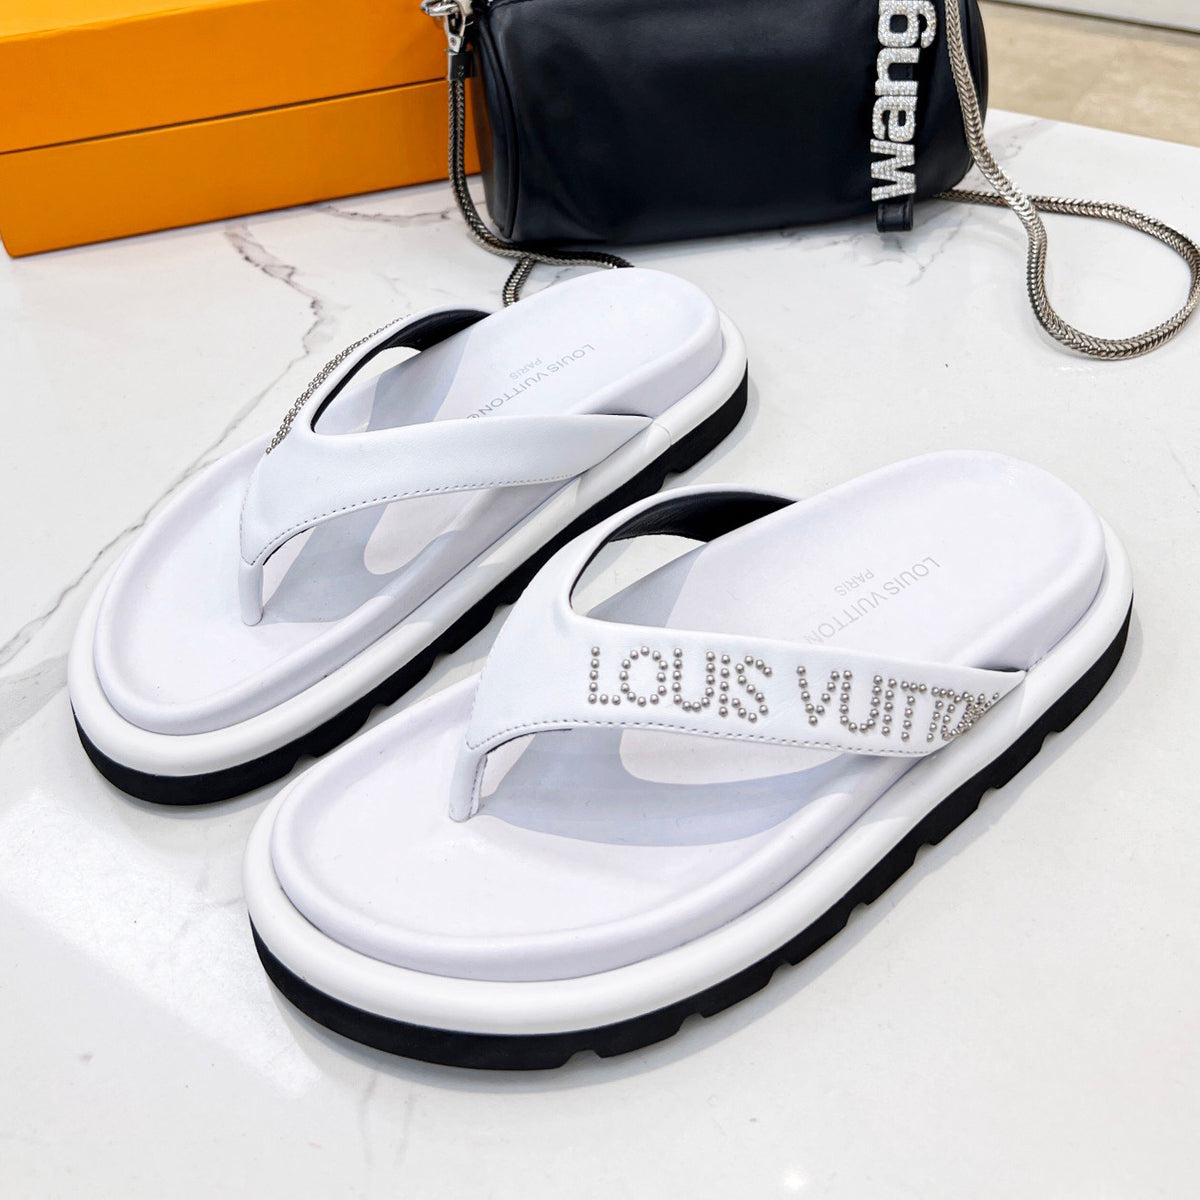 LV Louis Vuitton Fashion Classics Print Sandals Shoes Slippers